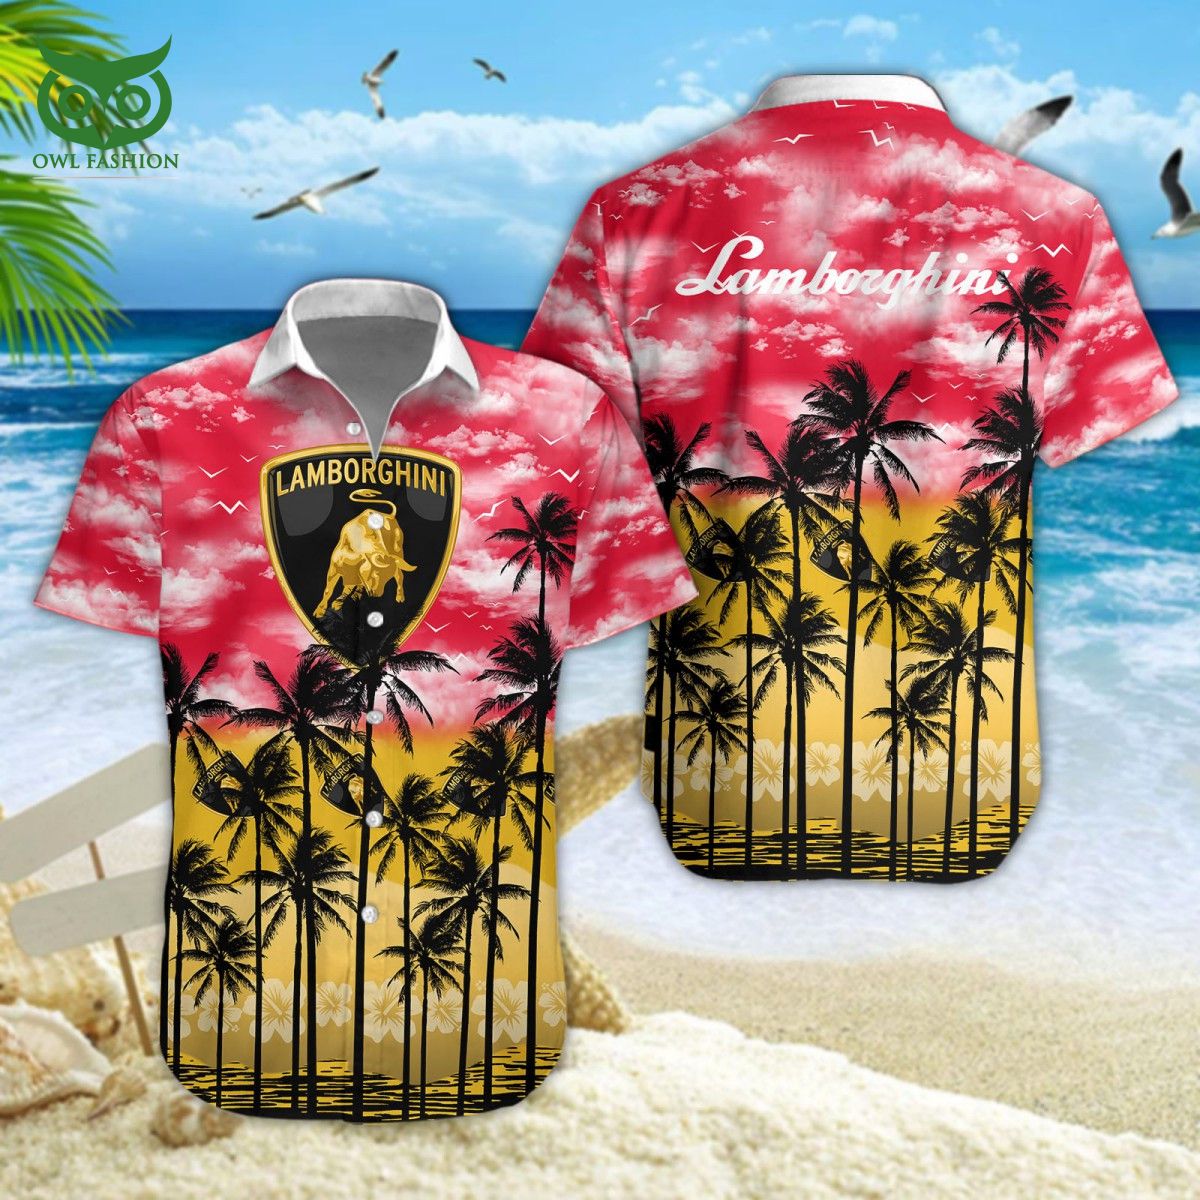 lamborghini car brand premium hawaiian shirt short 1 mRs3T.jpg